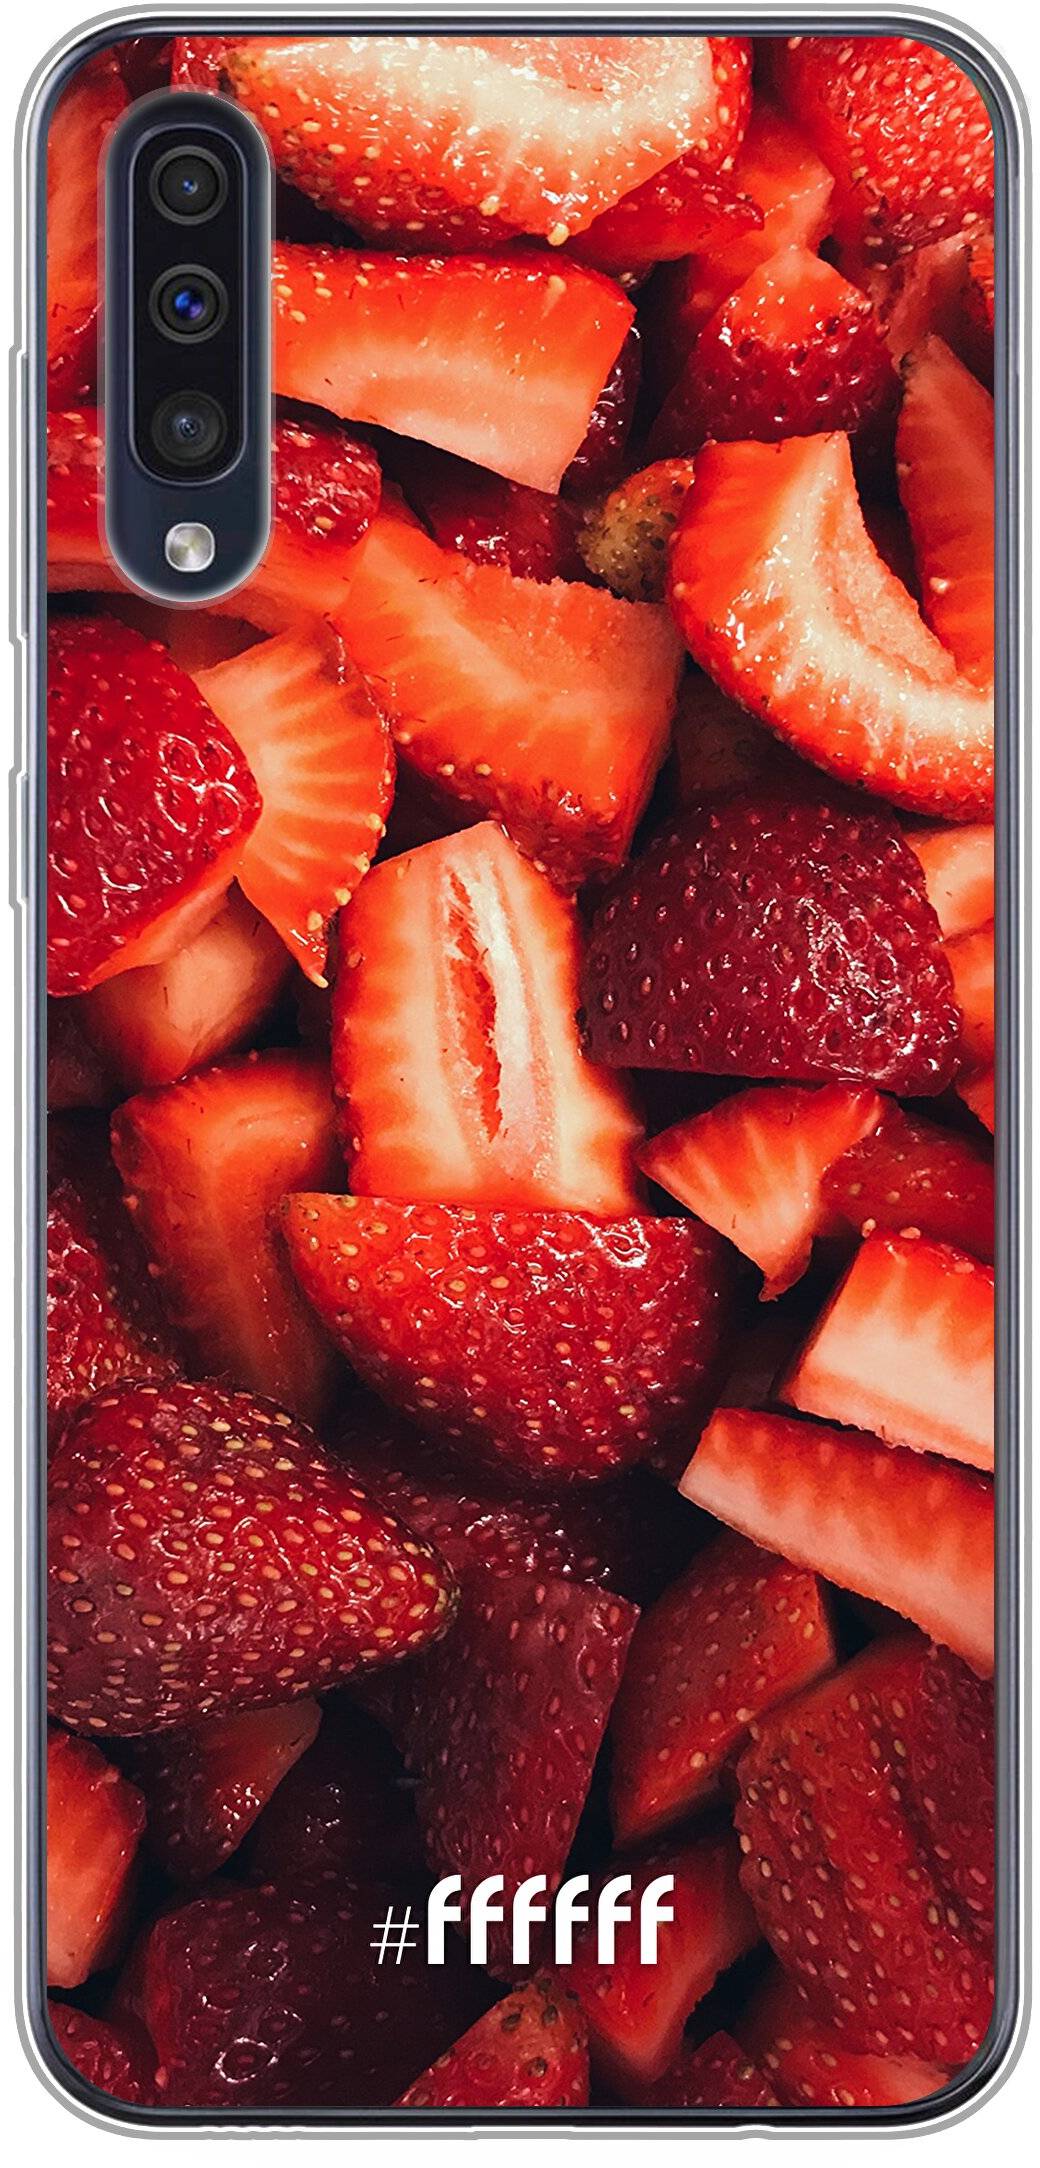 Strawberry Fields Galaxy A30s